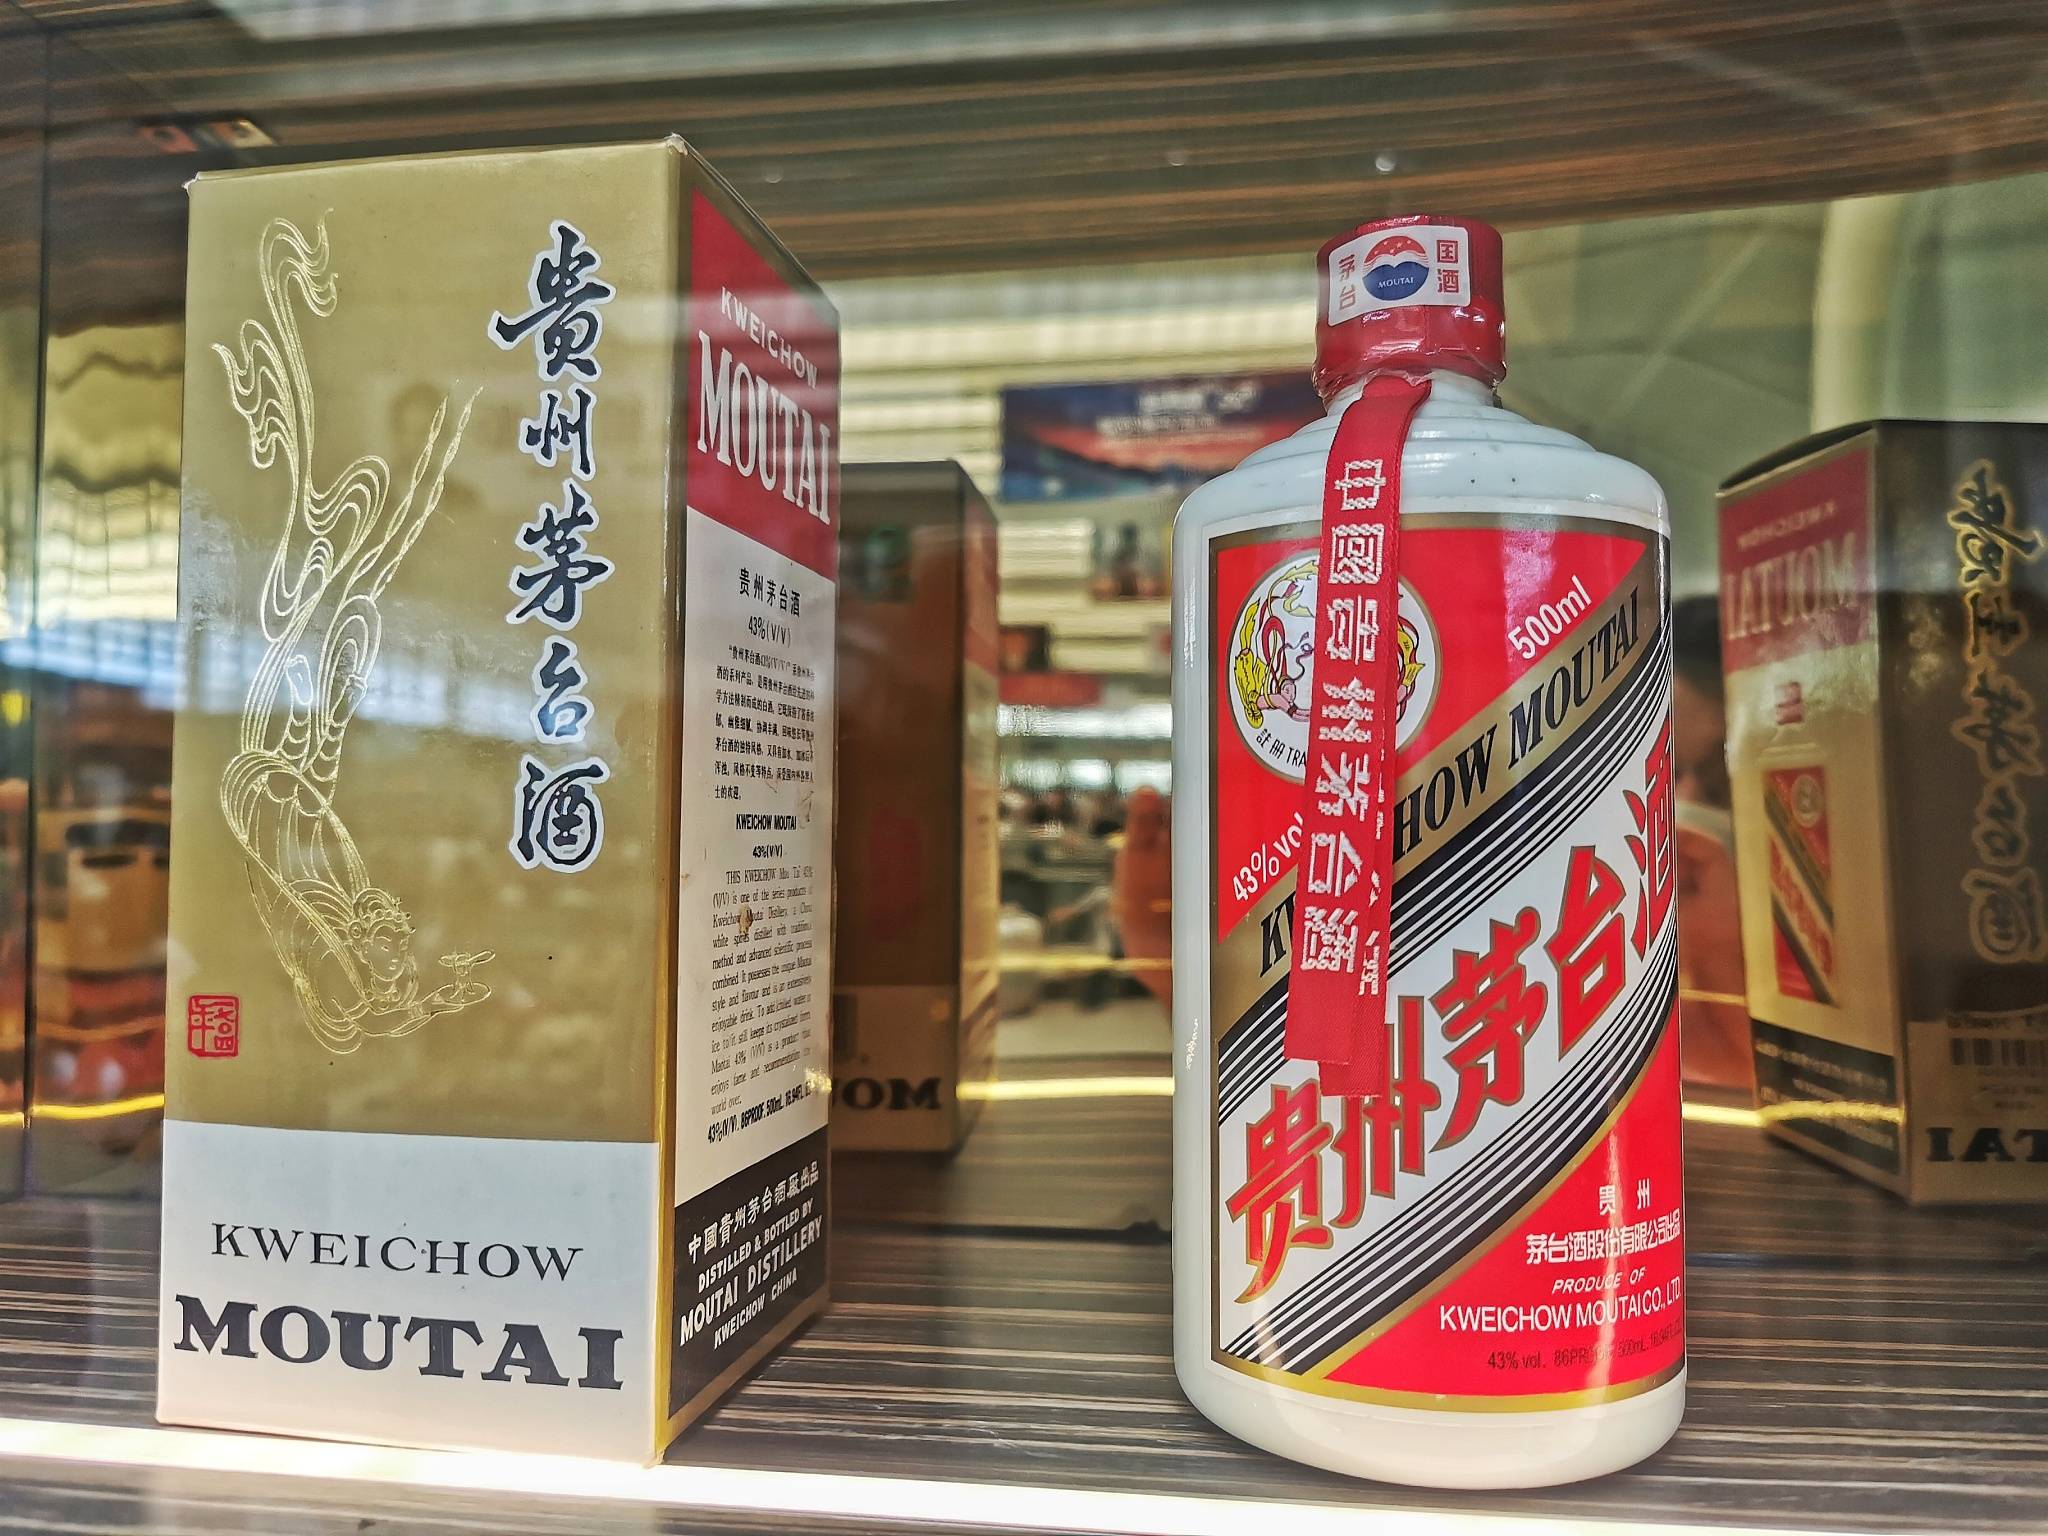 在贵州茅台股价的带动下,皇台酒业(000995.sz)涨停,股价报收20.